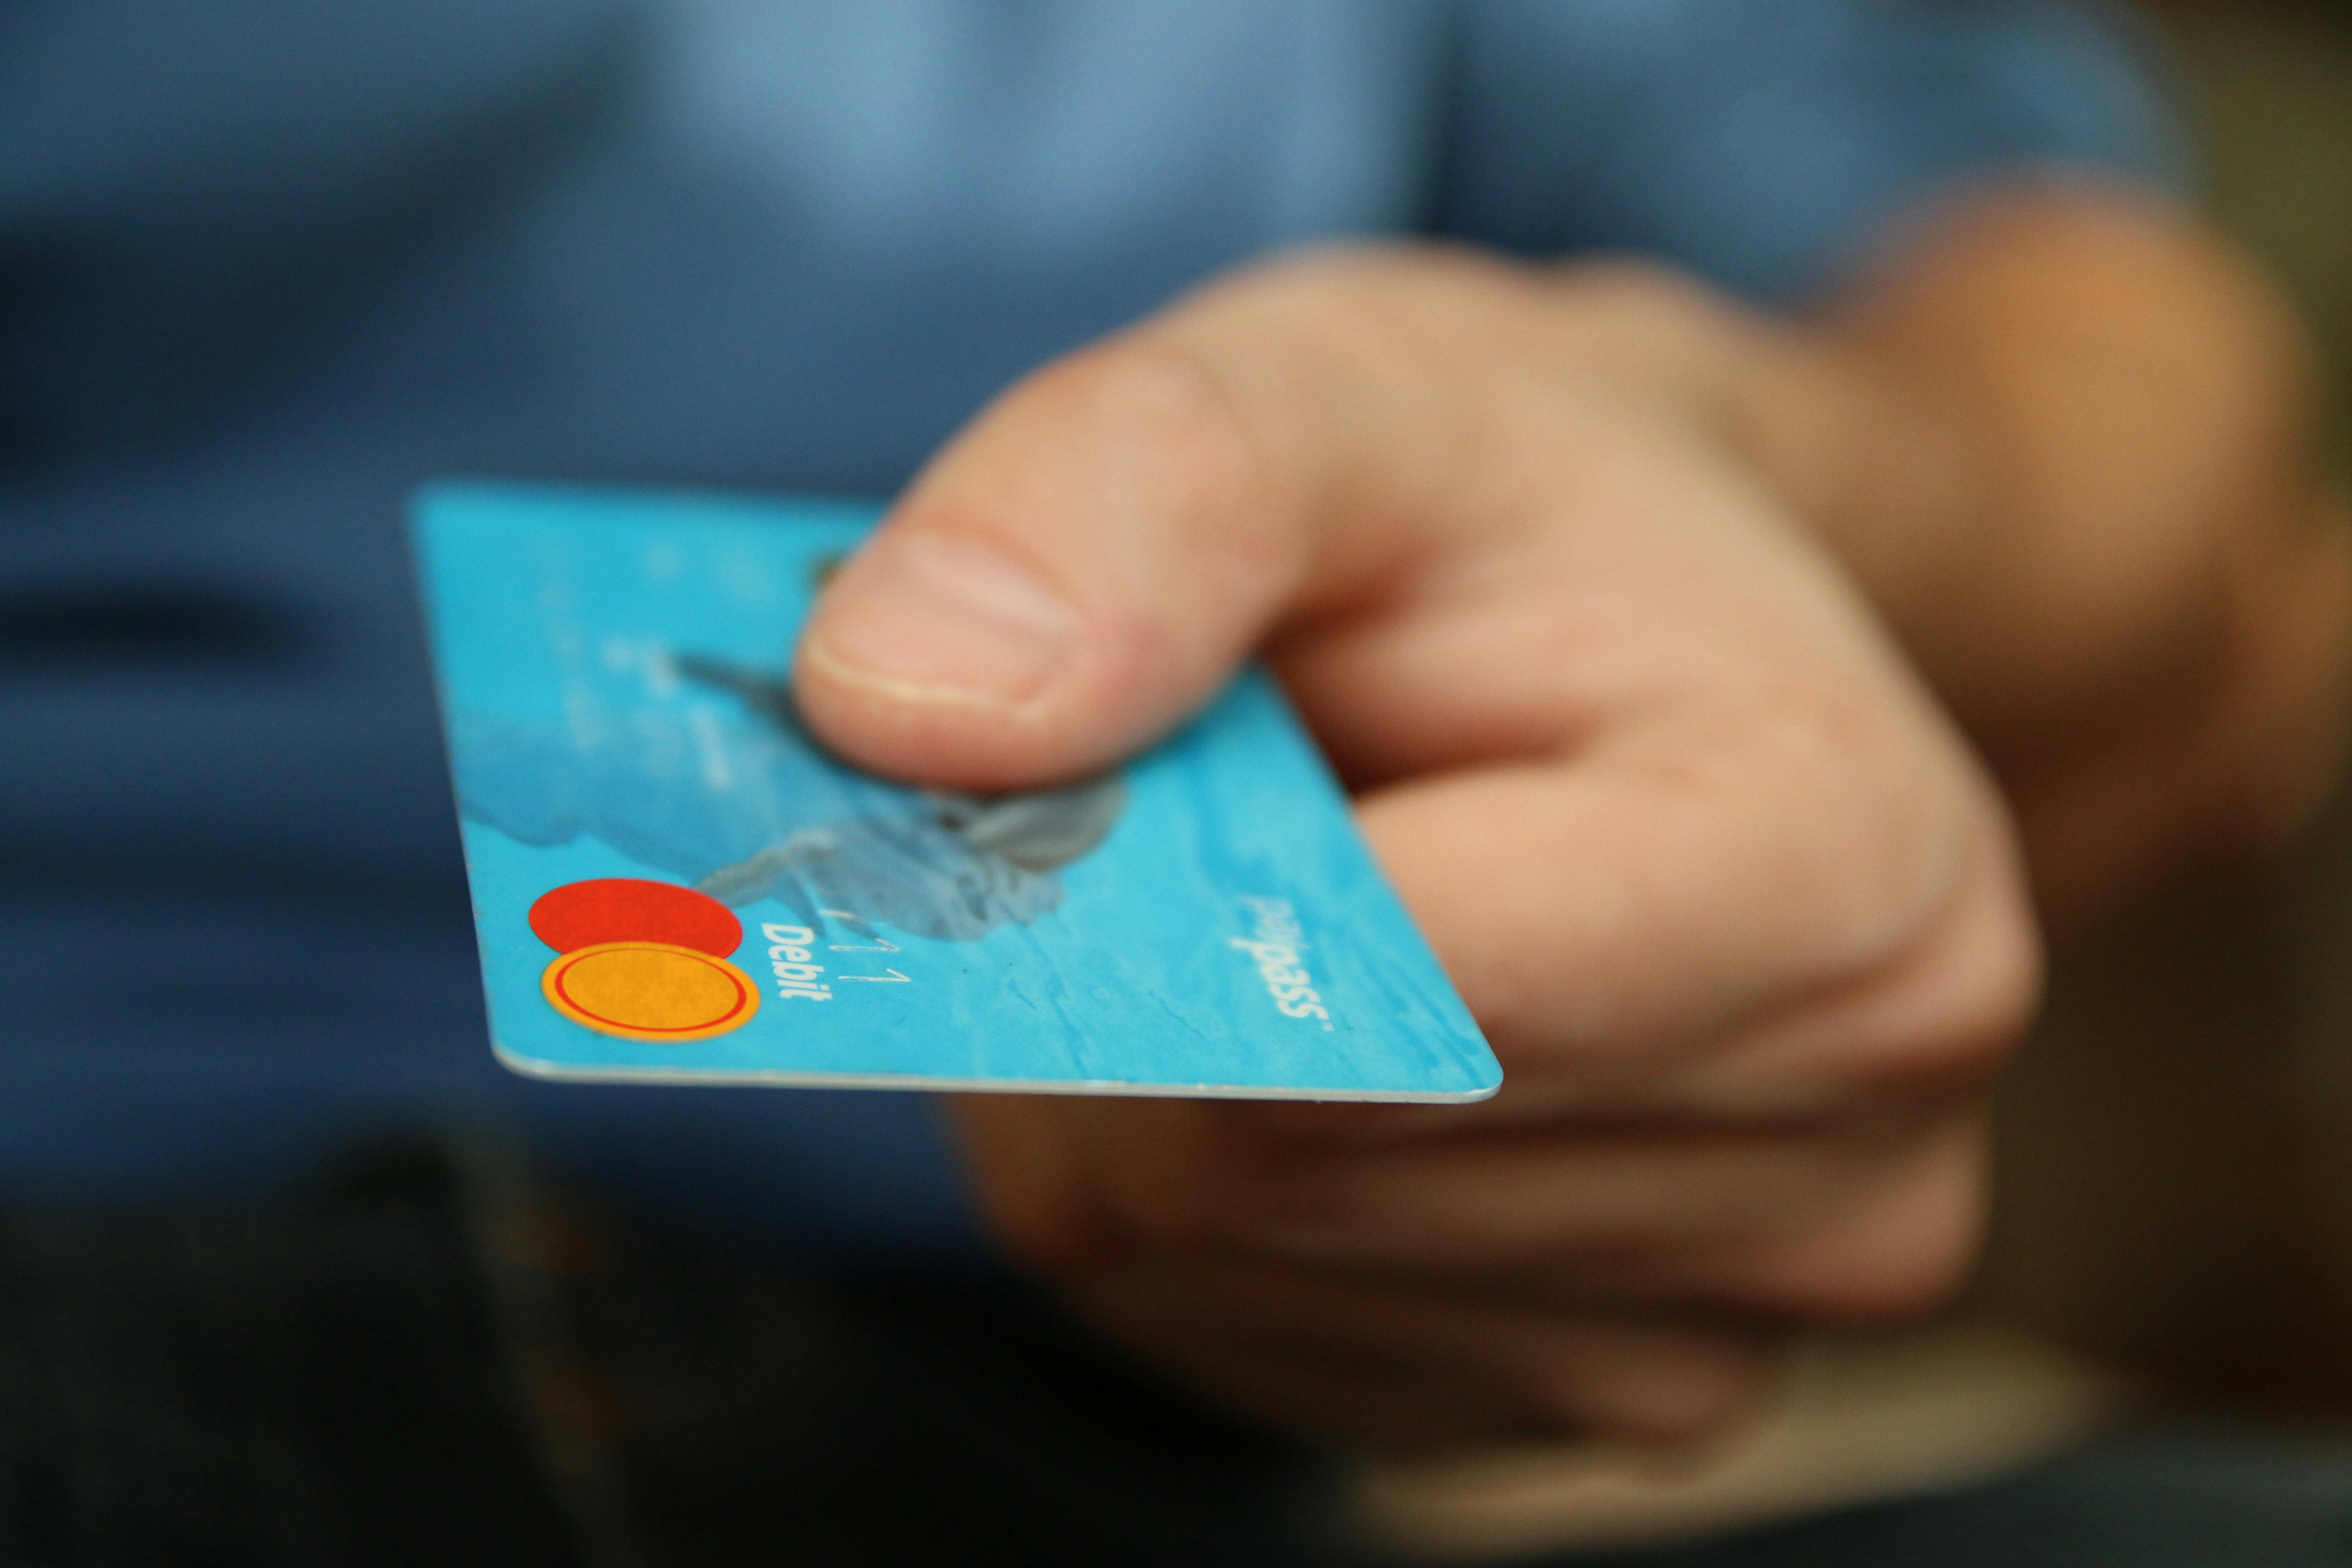 Un homme remettant une carte de débit pour payer quelque chose | Source : Pexels